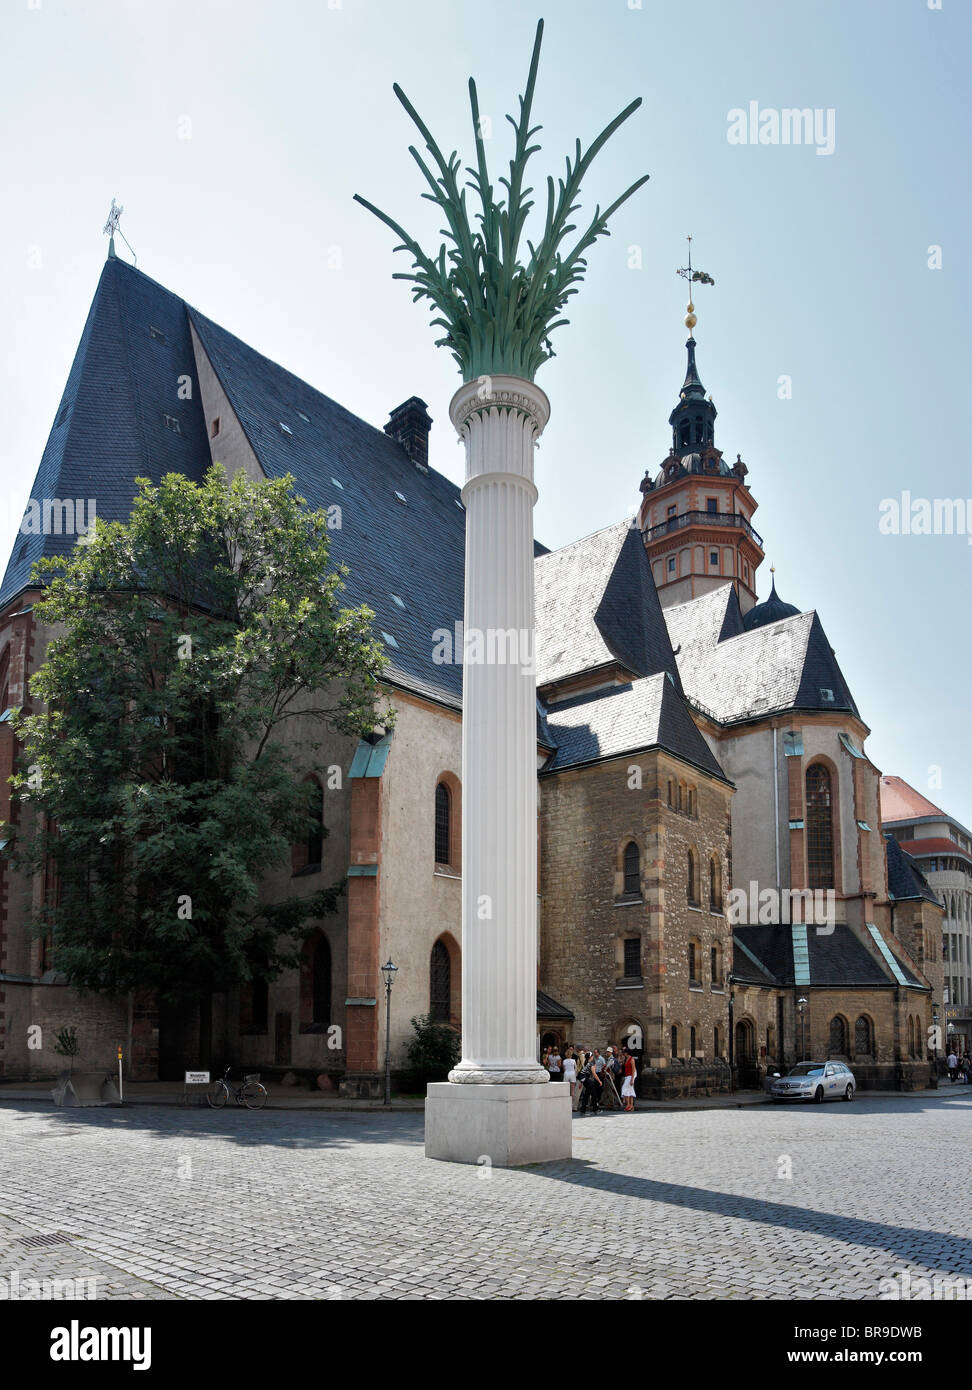 Nikolaikirche Church with memorial column to the peaceful revolution of 1989, Leipzig, Saxony, Germany, Europe Stock Photo